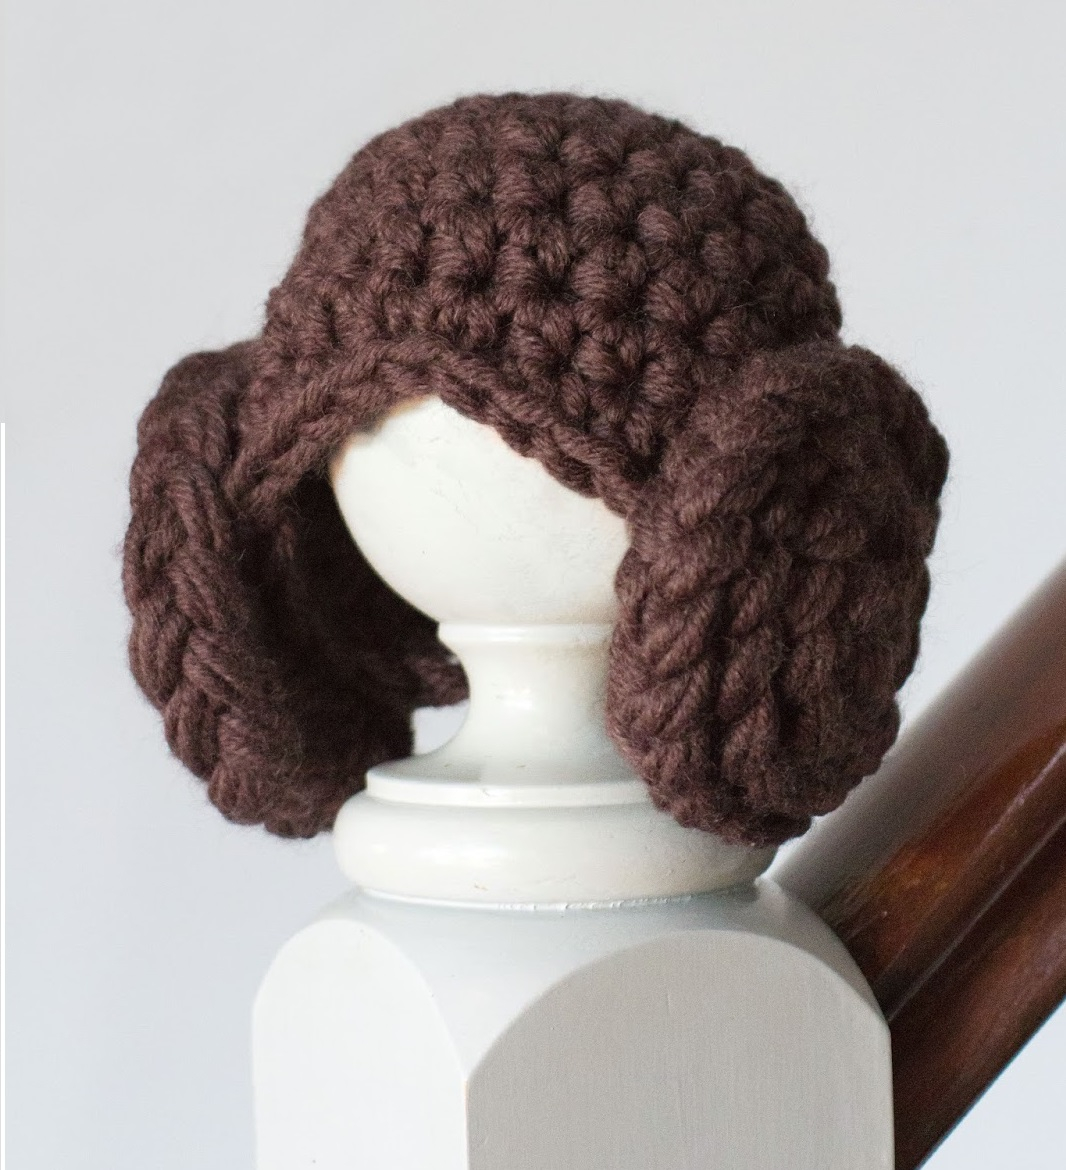 Crochet Yoda Hat Pattern Free Get Star Wars Crochet Hat Pattern 89bc2 7995a